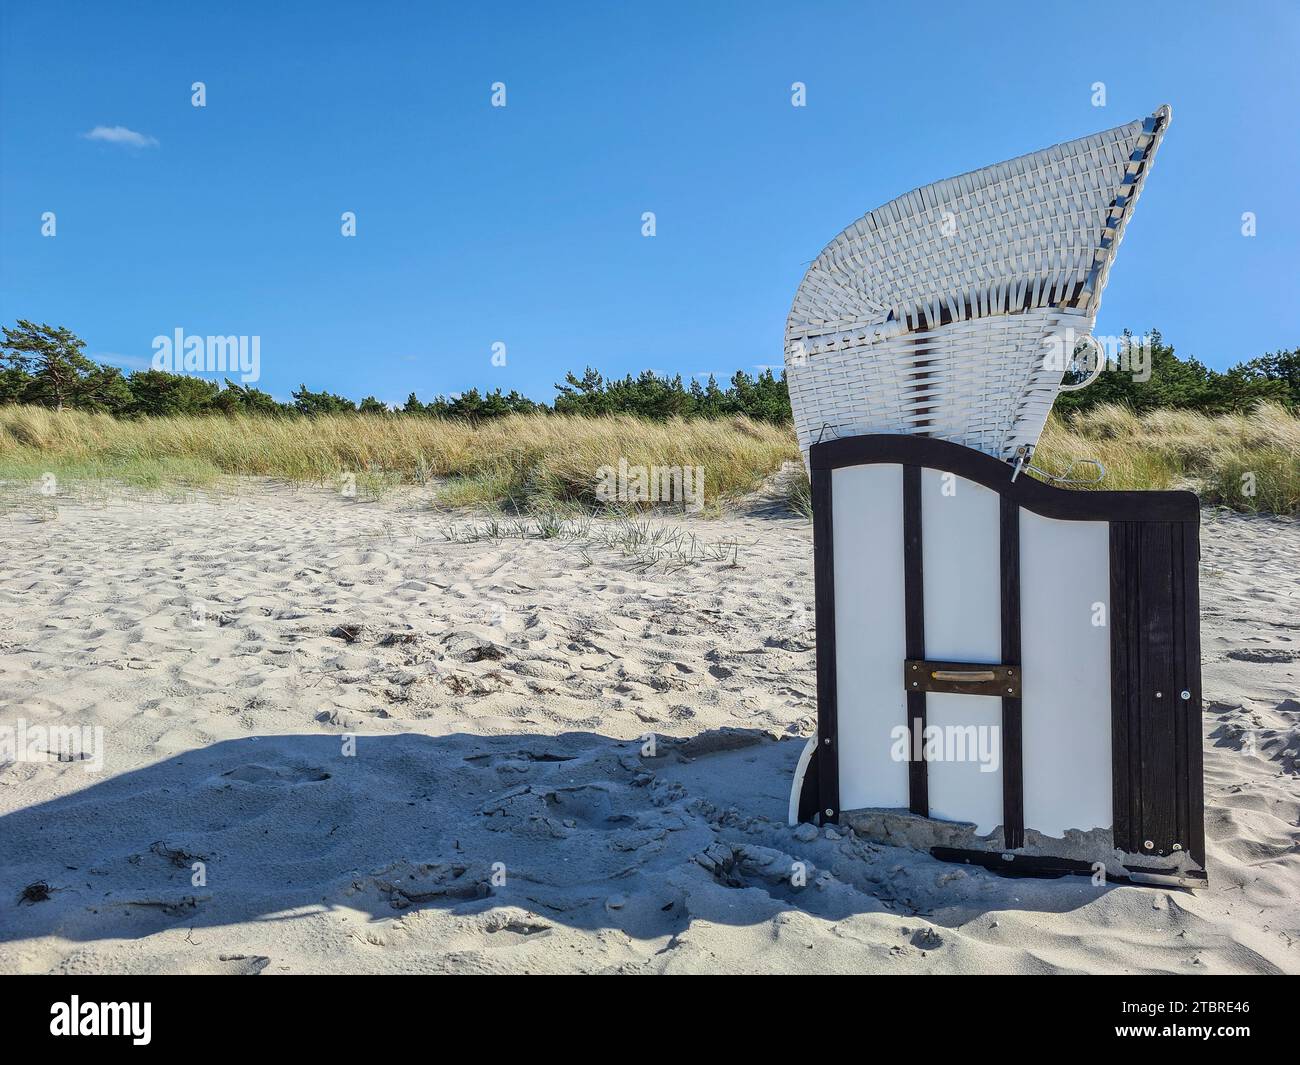 La sdraio bianca si erge alla luce del sole sulla sabbia leggera, giorno estivo a Prerow sul Mar Baltico, penisola di Fischland-Darß-Zingst, Meclemburgo-Pomerania occidentale, Germania Foto Stock